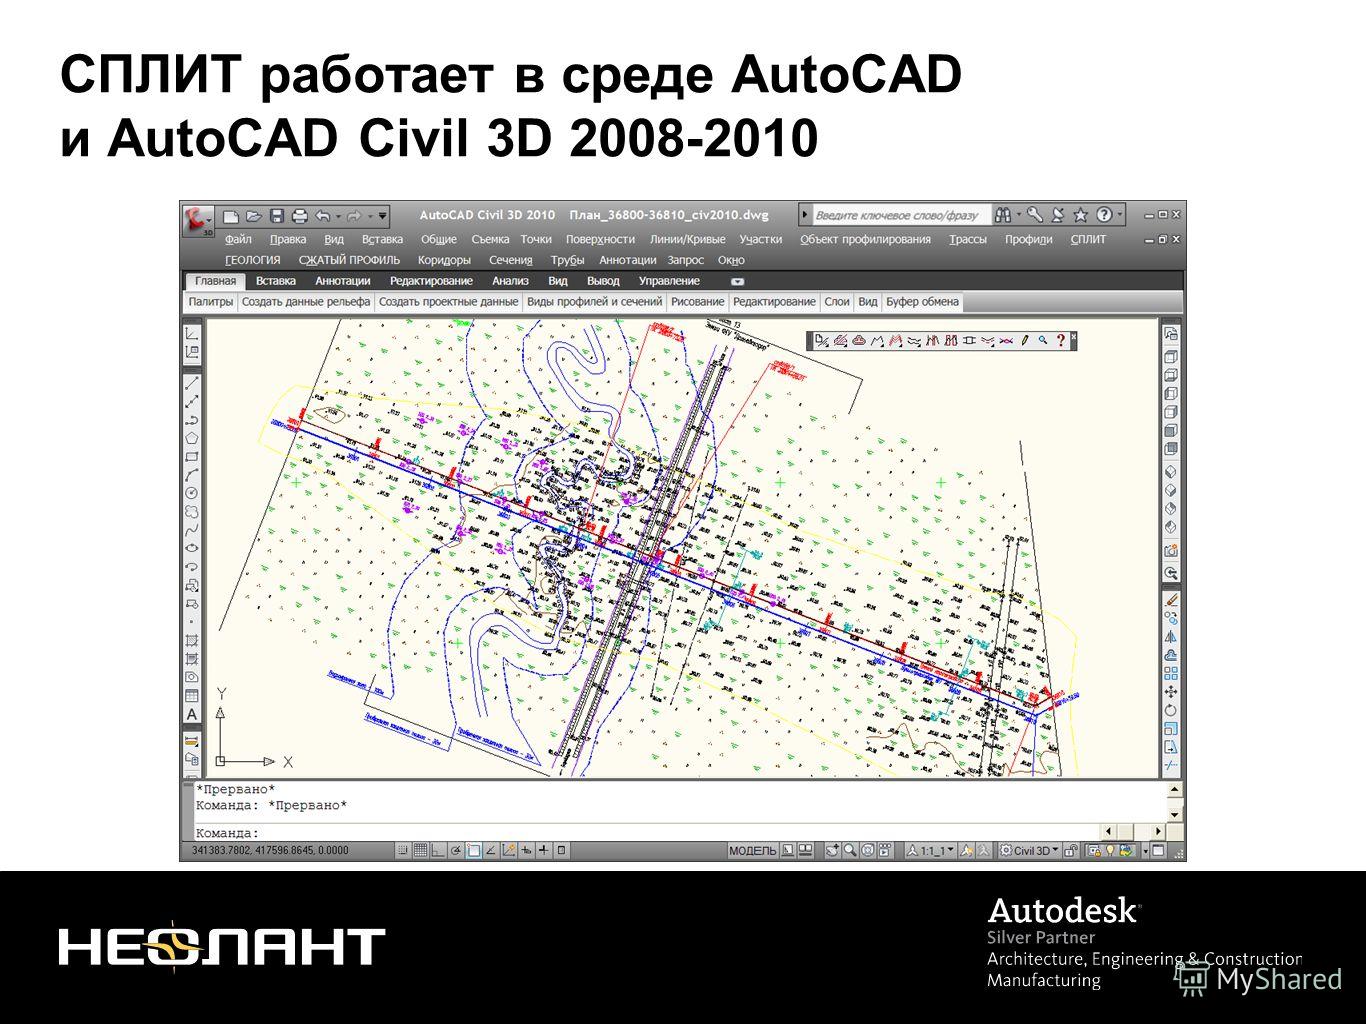 СПЛИТ работает в среде AutoCAD и AutoCAD Civil 3D 2008-2010